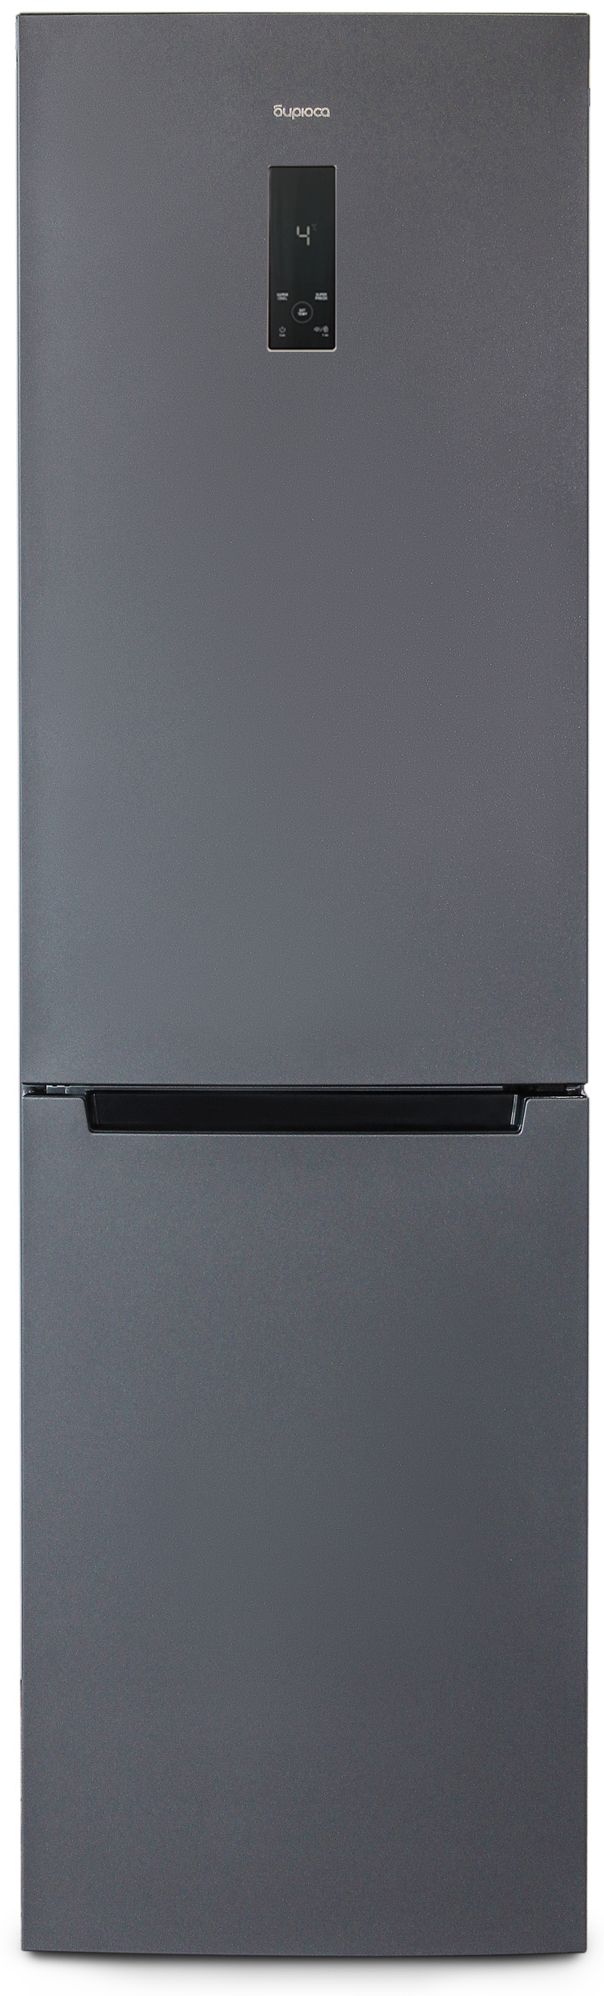 холодильник бирюса 980nf, купить в Красноярске холодильник бирюса 980nf,  купить в Красноярске дешево холодильник бирюса 980nf, купить в Красноярске минимальной цене холодильник бирюса 980nf